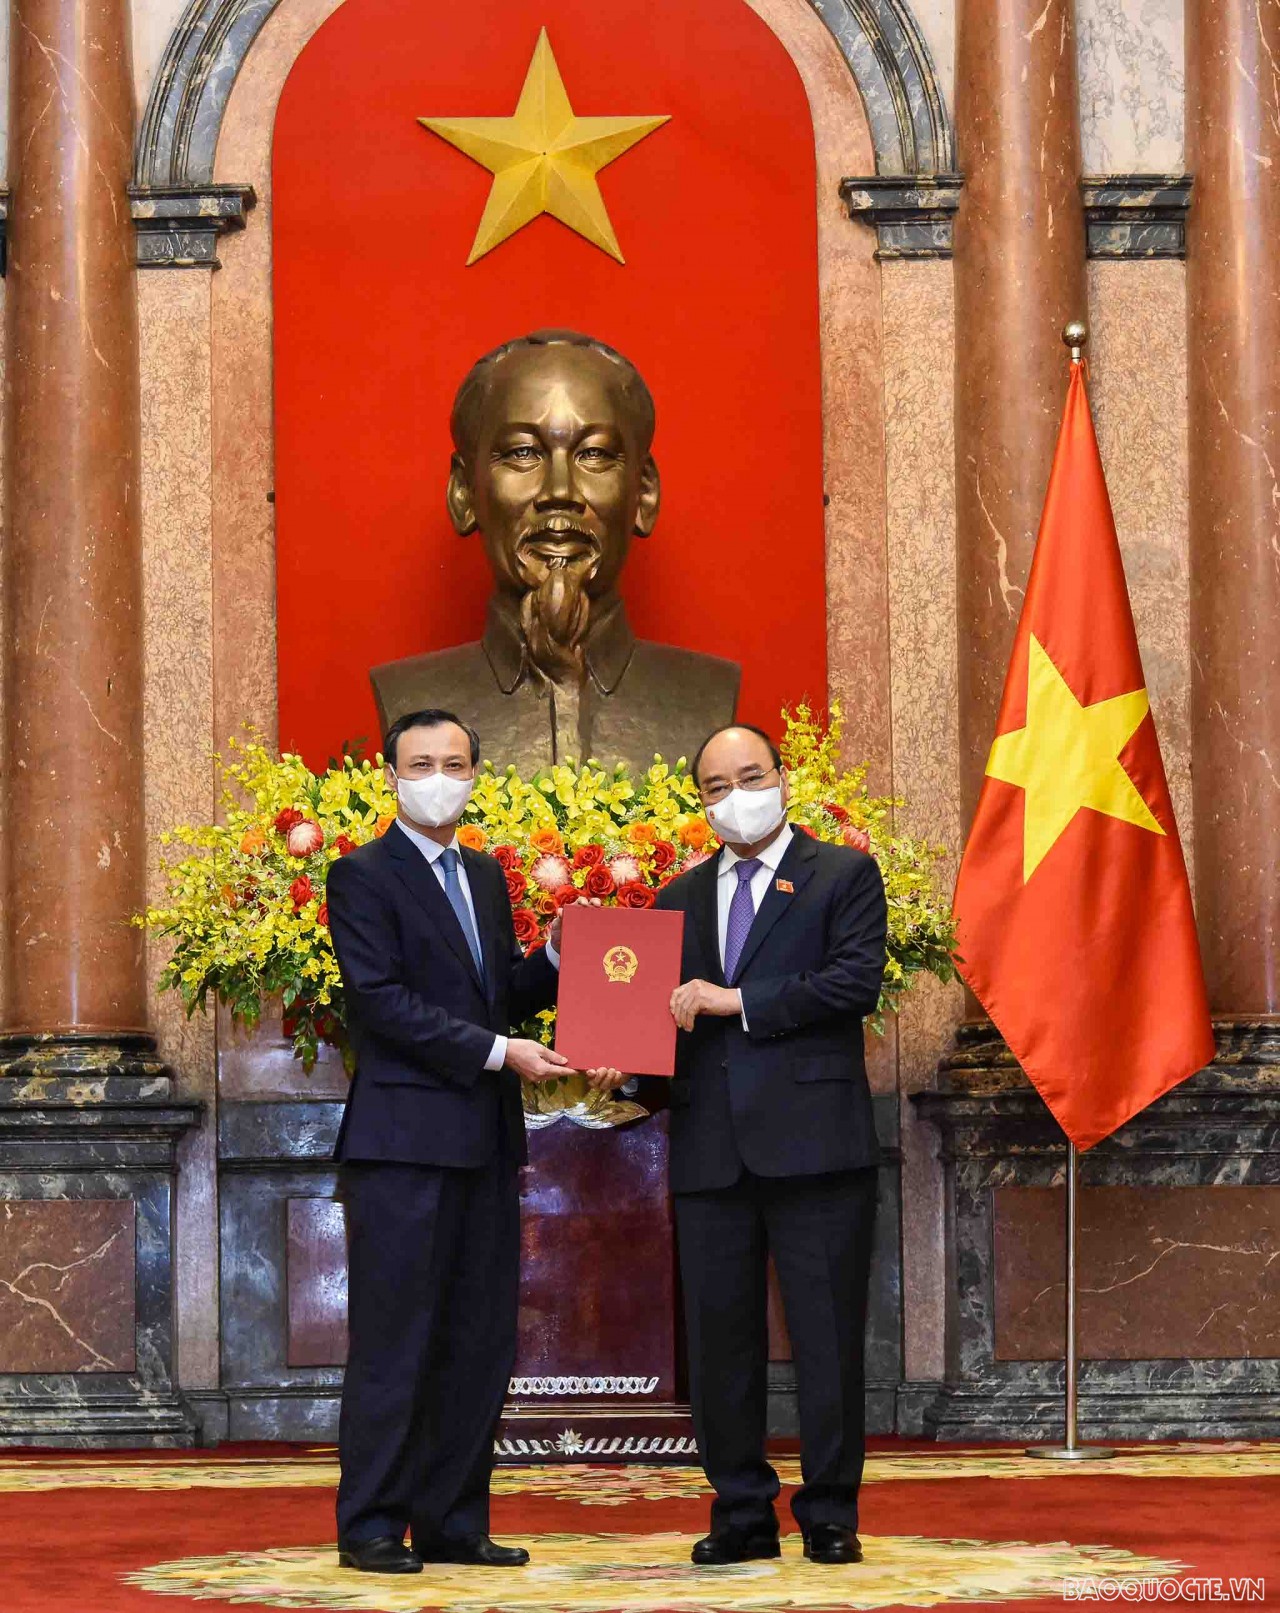 Những hình ảnh tại lễ trao quyết định bổ nhiệm cho 8 Đại sứ Việt Nam tại nước ngoài nhiệm kỳ 2021-2024